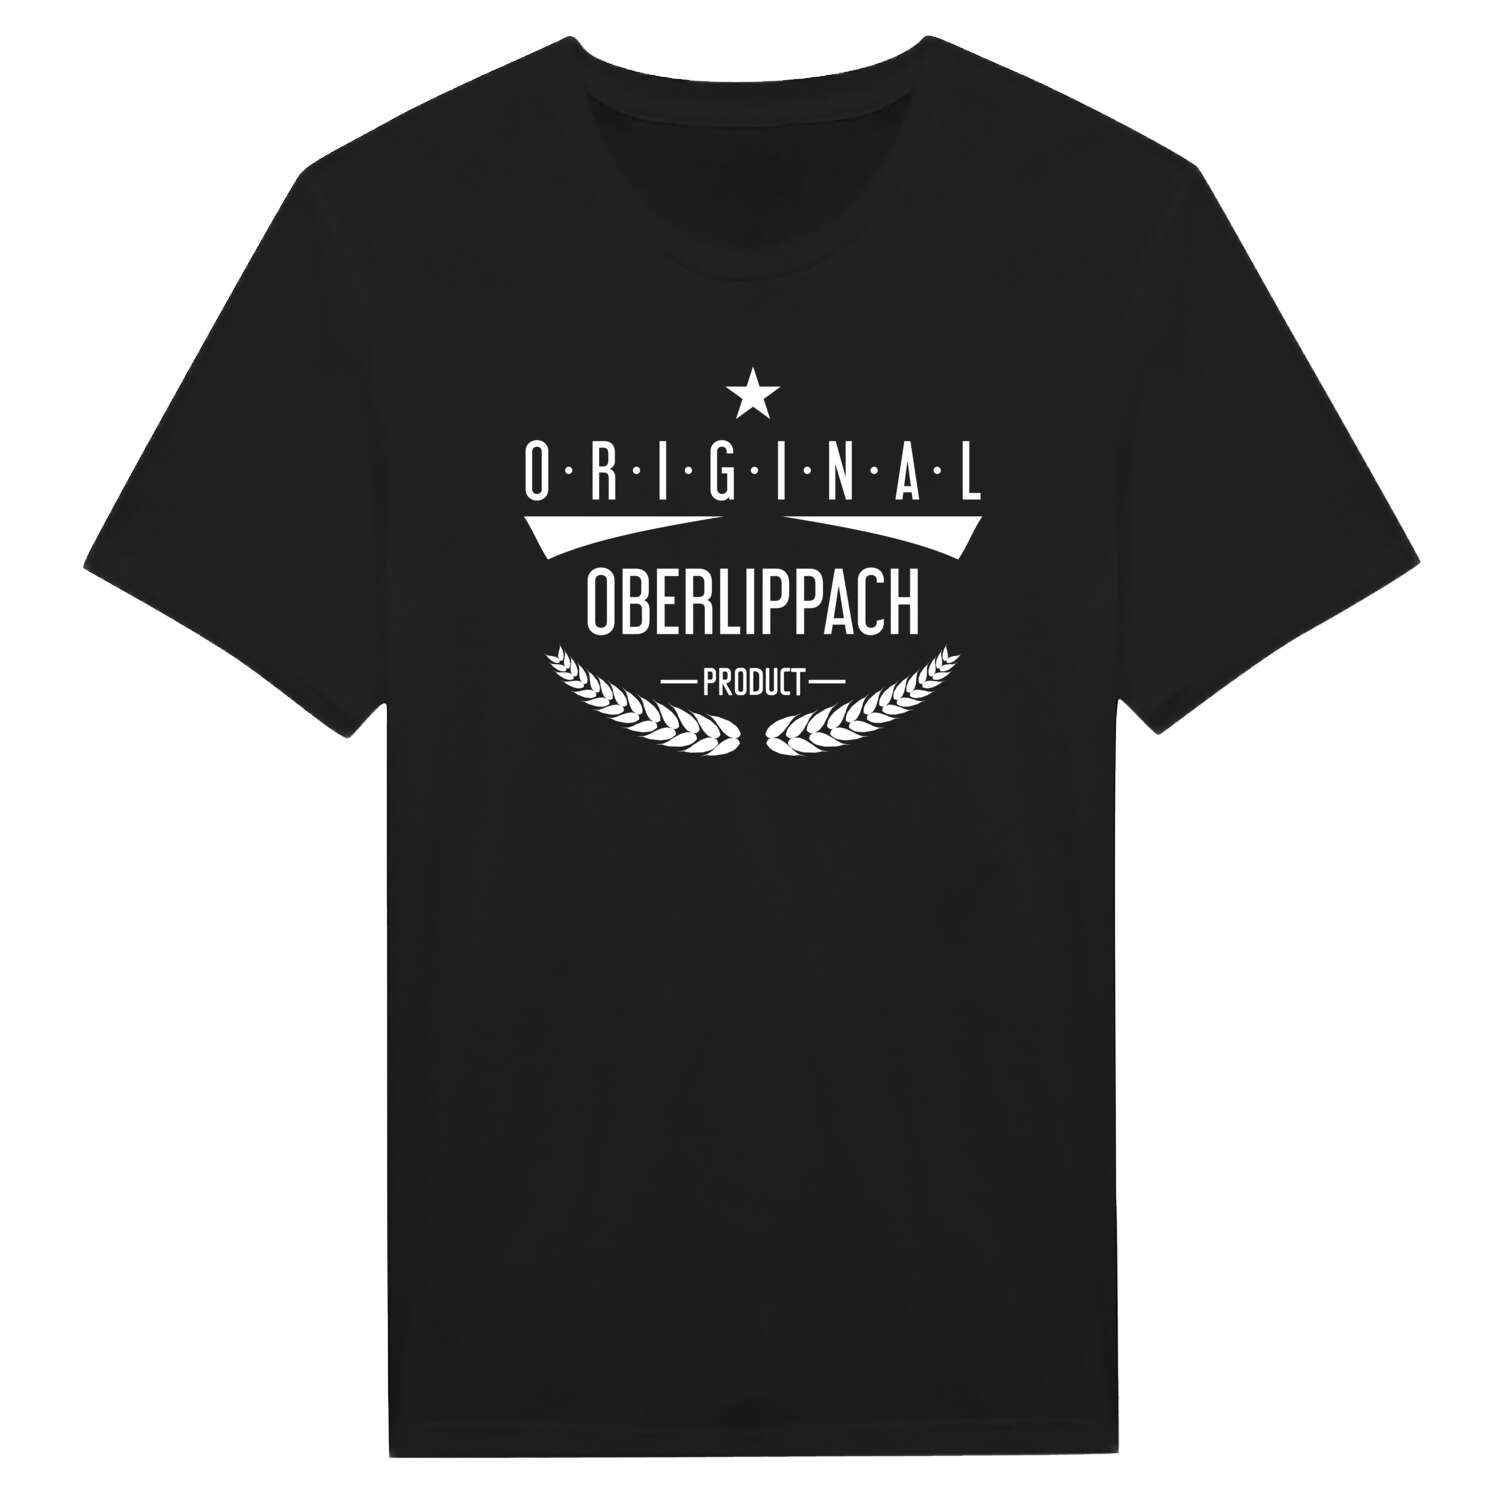 Oberlippach T-Shirt »Original Product«